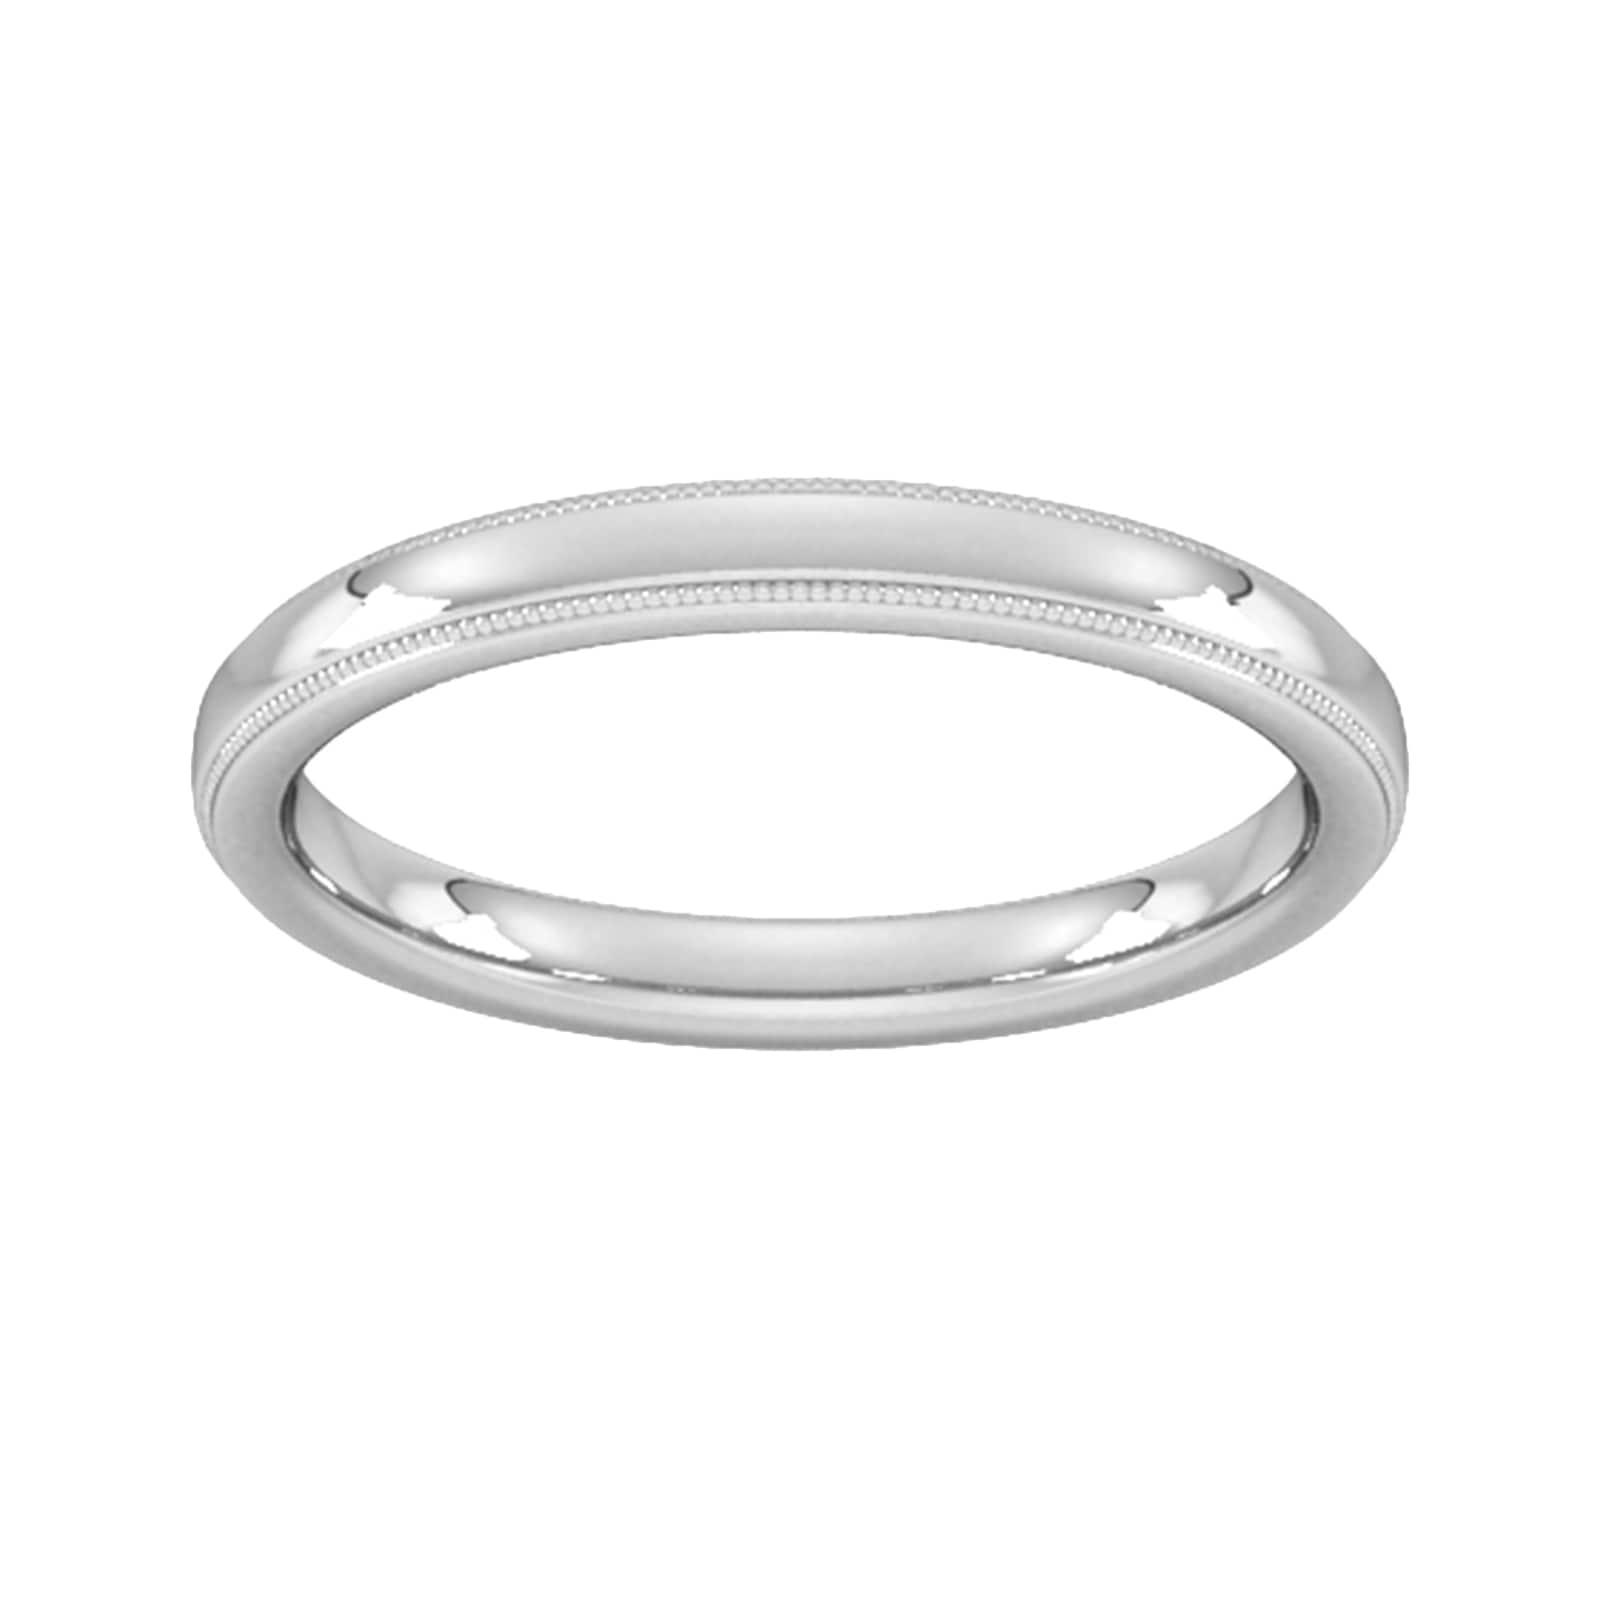 2.5mm D Shape Heavy Milgrain Edge Wedding Ring In 18 Carat White Gold - Ring Size N